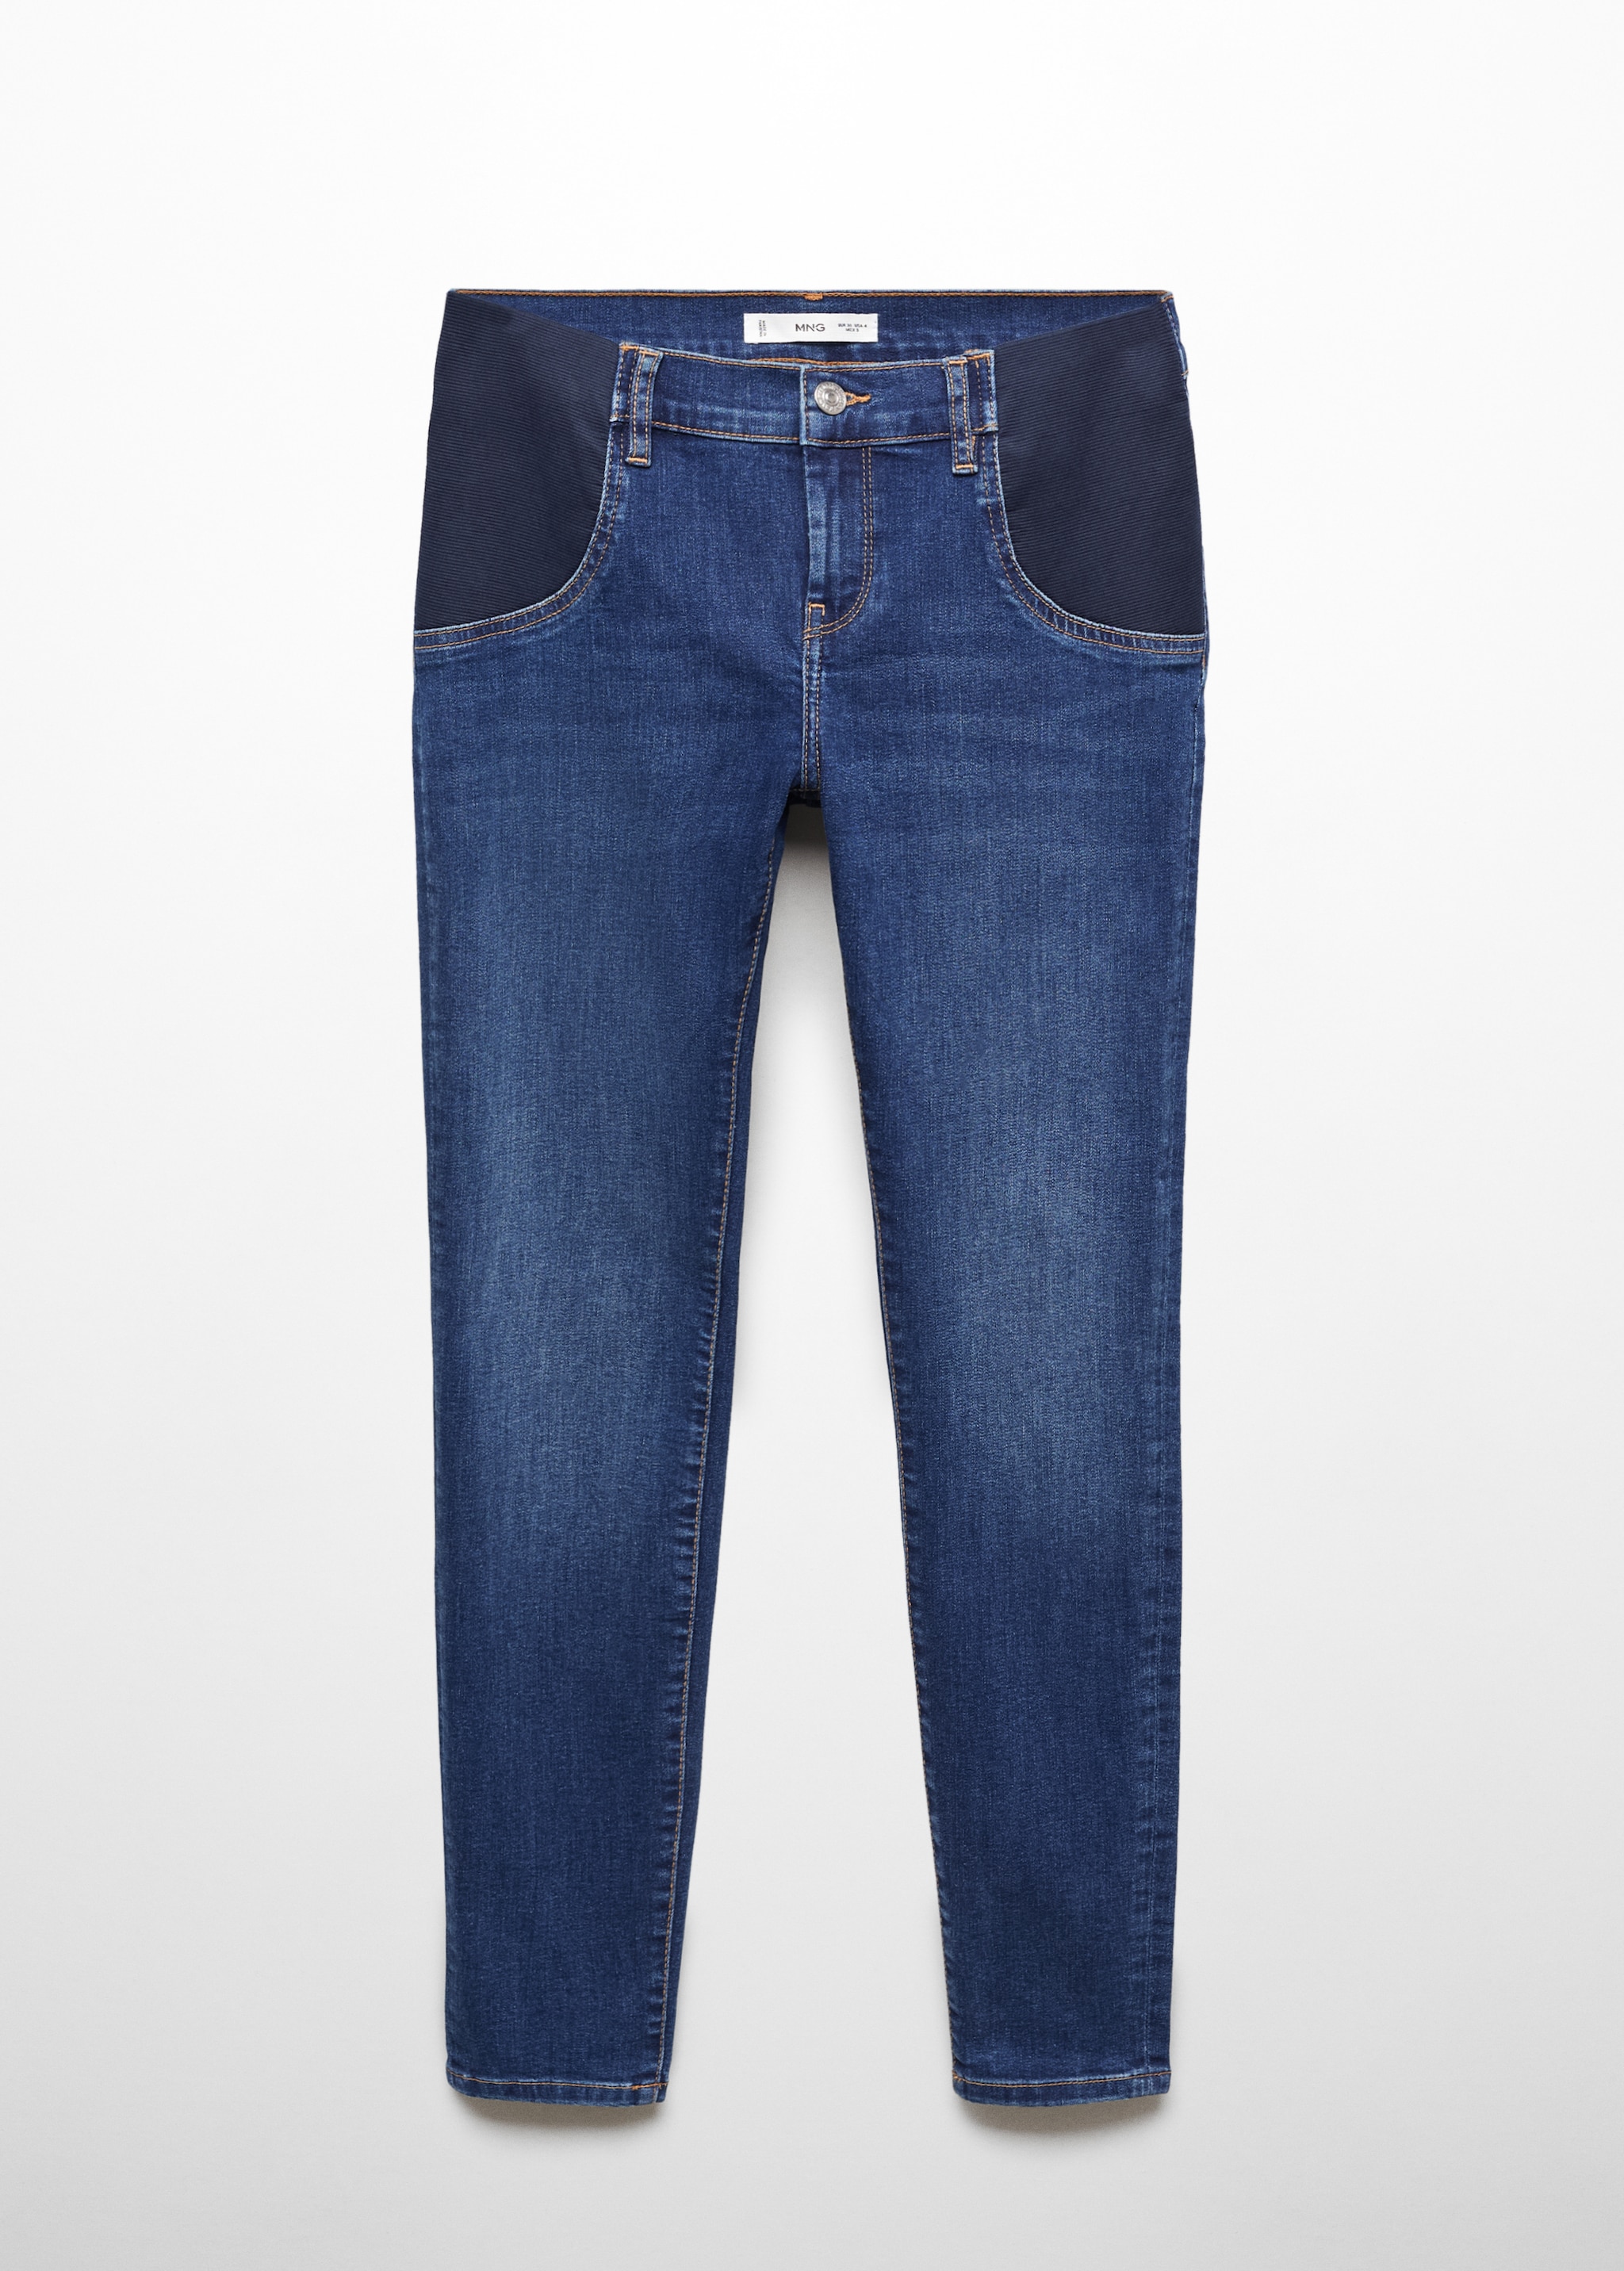 Jeans skinny premaman - Articolo senza modello